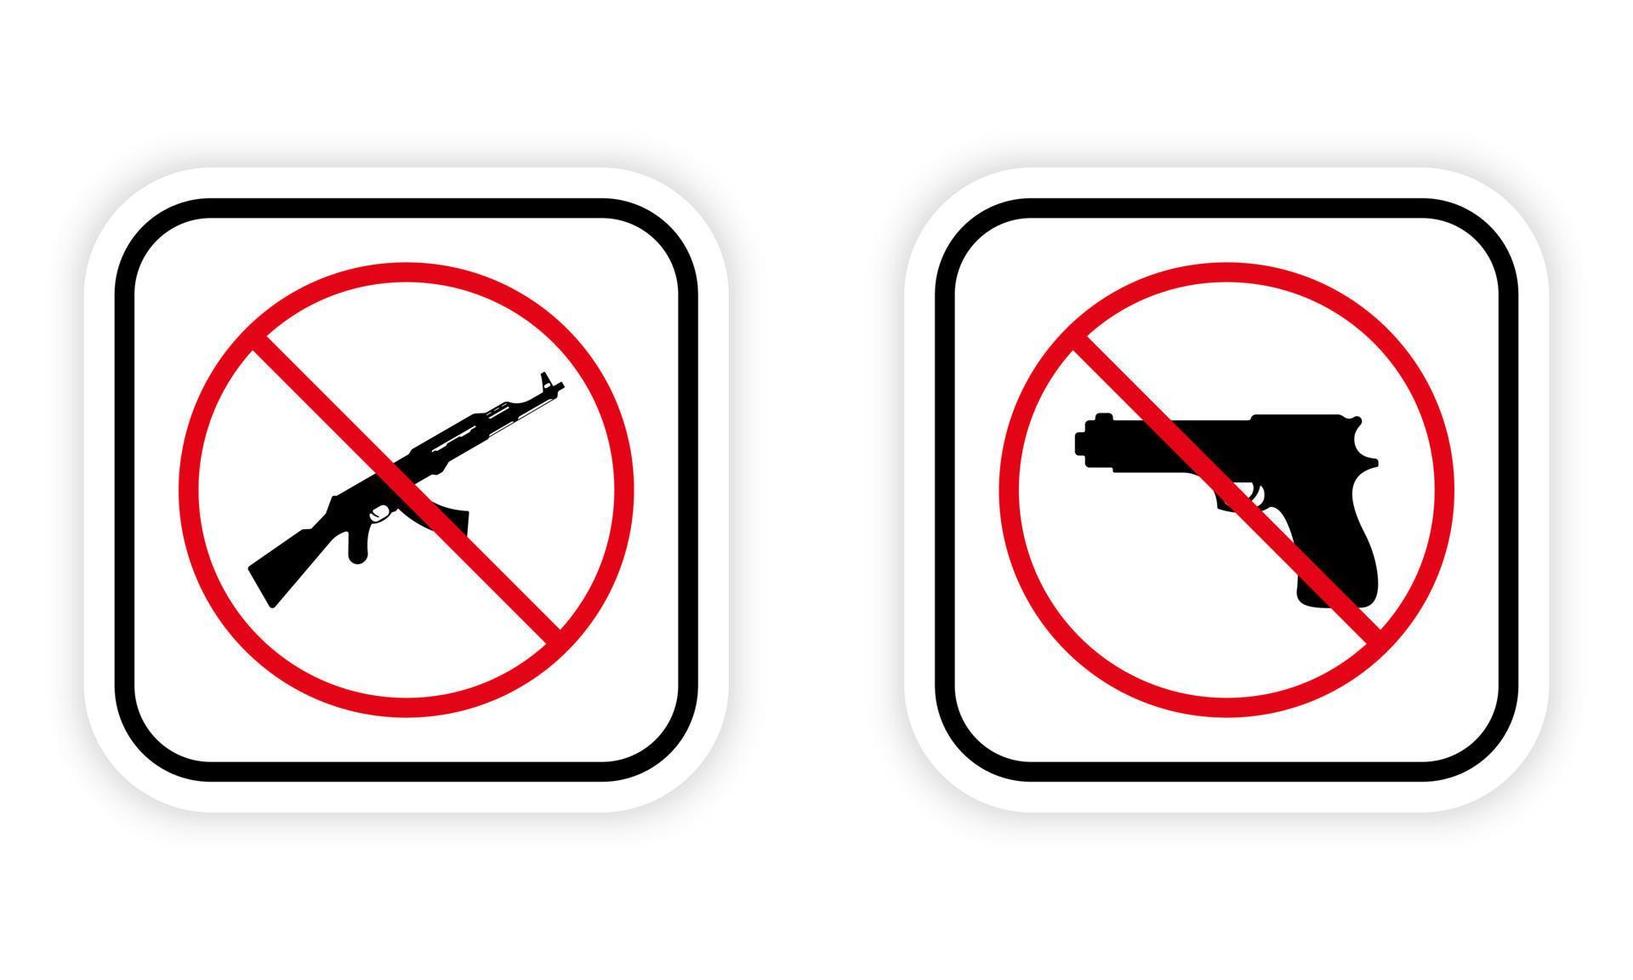 pistola militar, pictograma prohibido ak47. pistola de mano y kalashnikov automático ak 47 detienen el icono de silueta negra. símbolo de prohibición roja del arma del ejército. peligro arma de fuego prohibida. ilustración vectorial aislada. vector